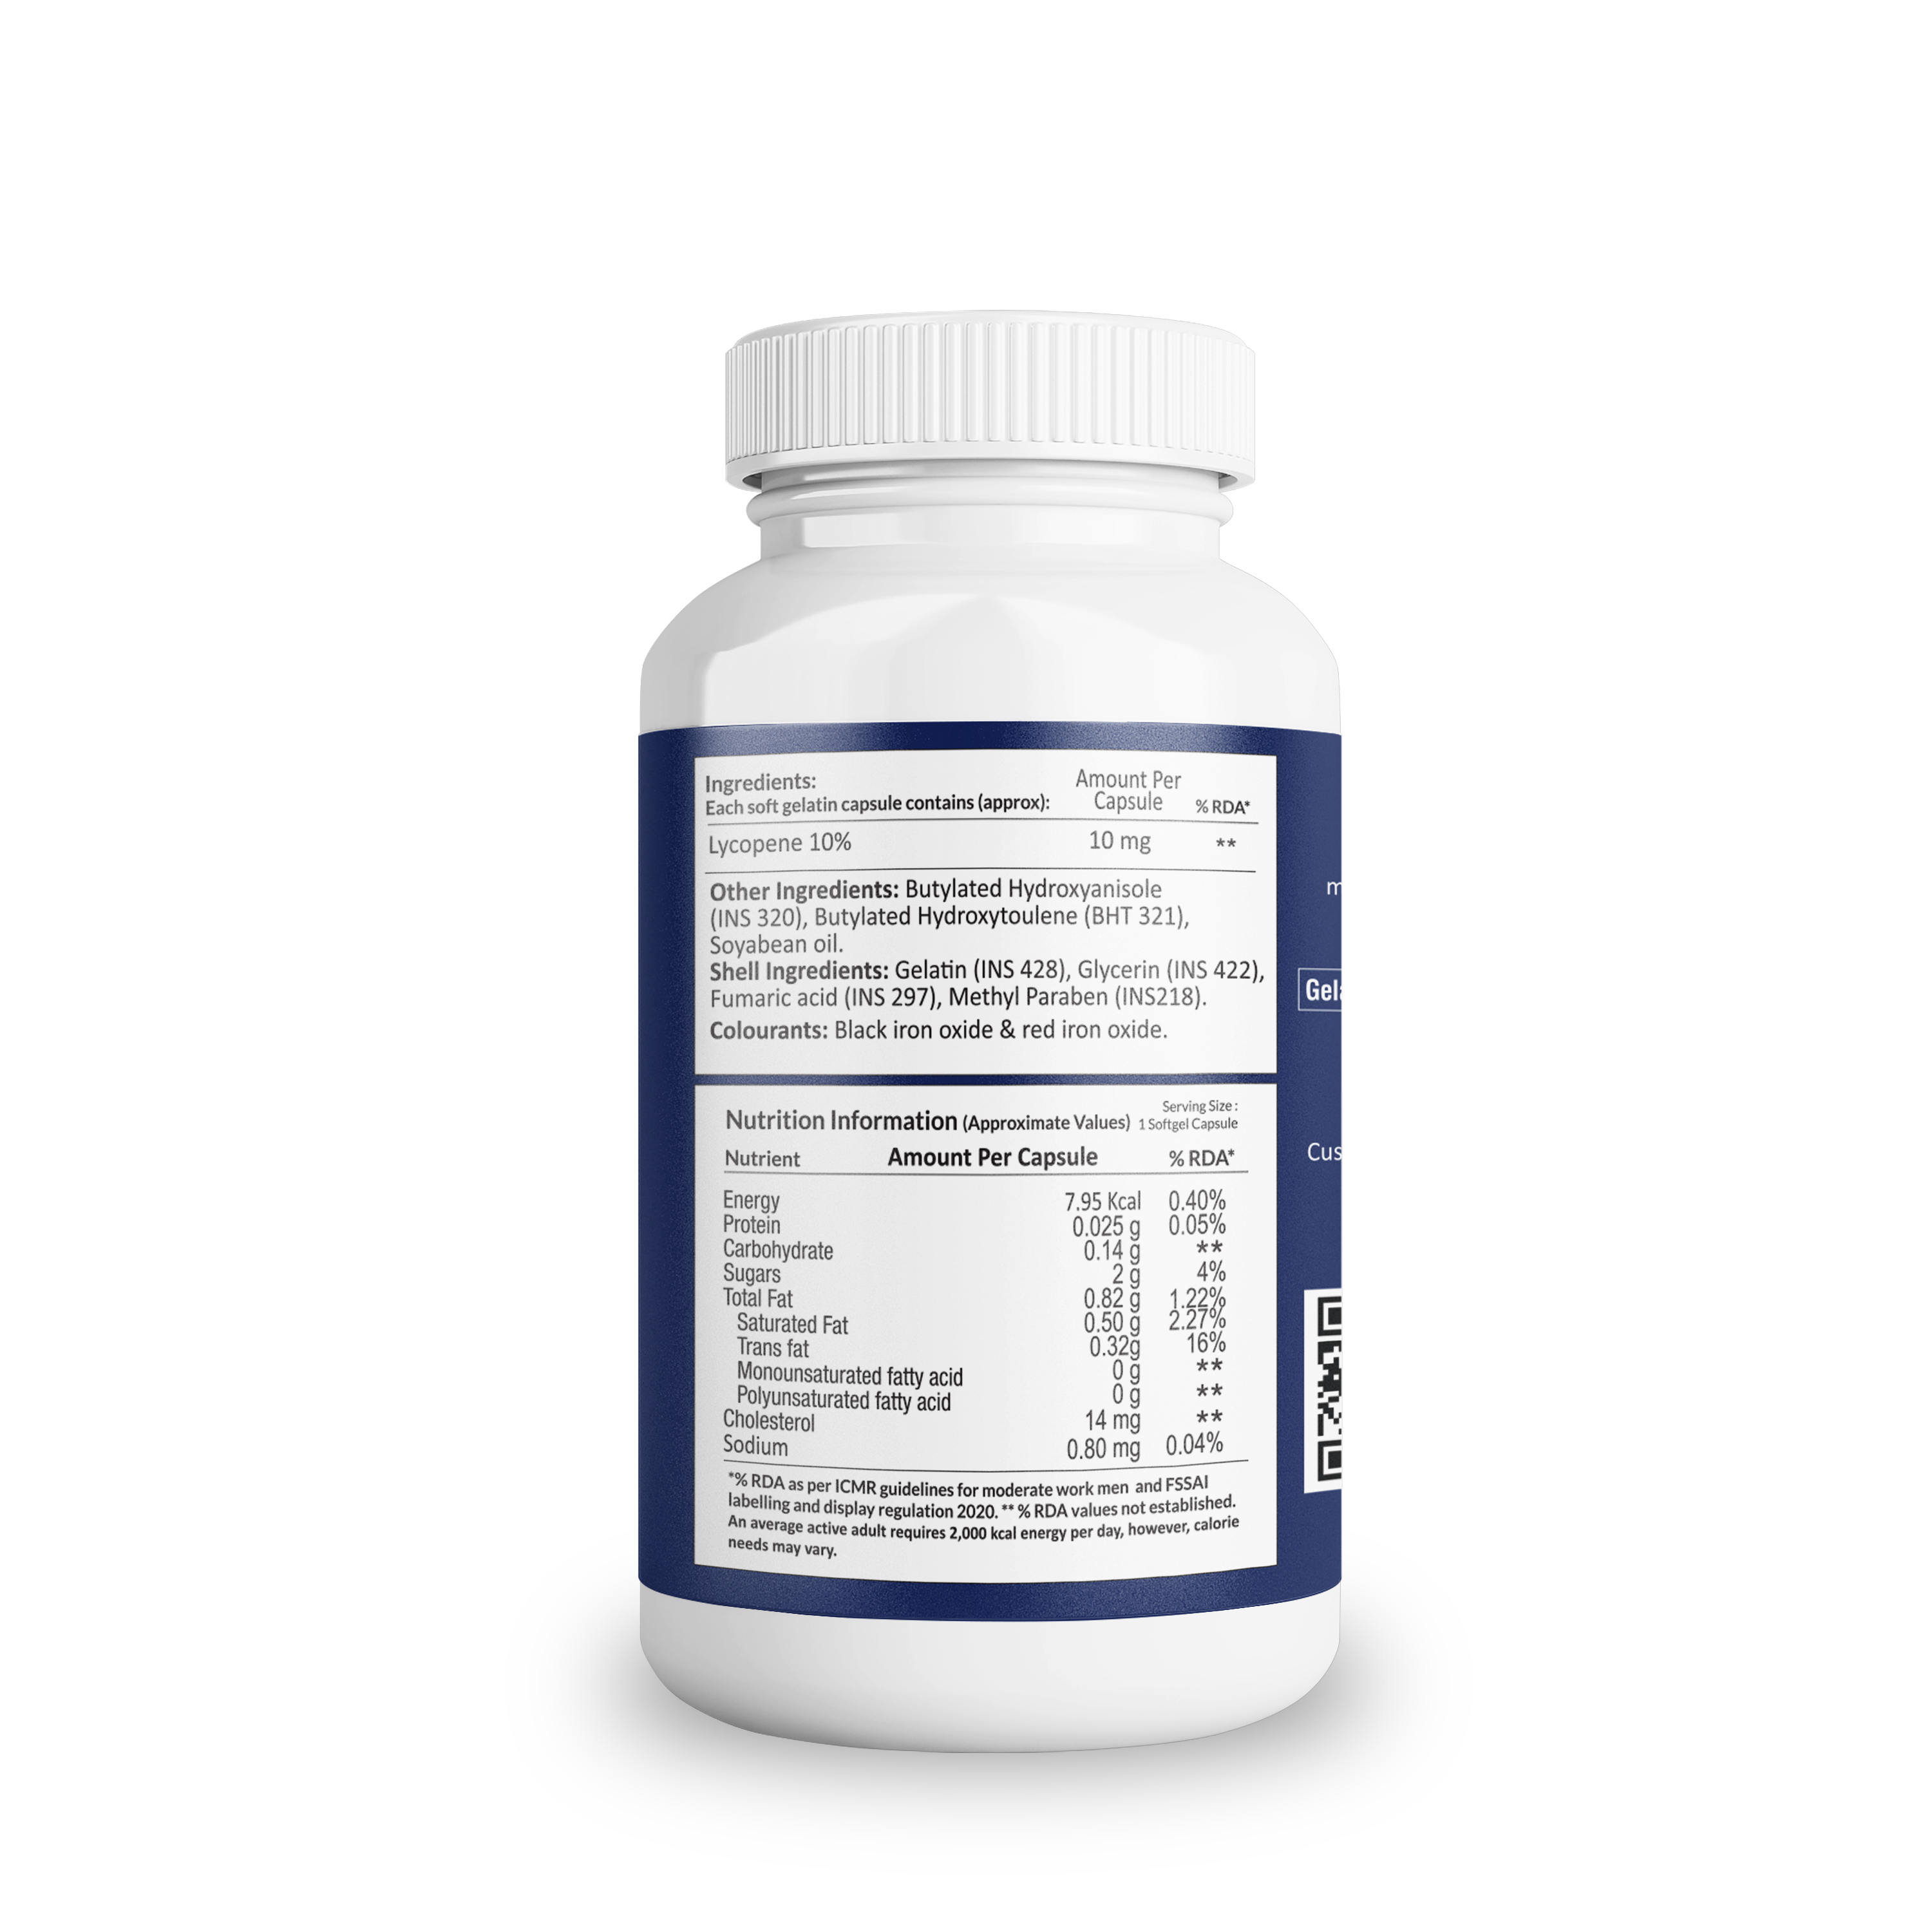 AIWO Lycopene 10 mg